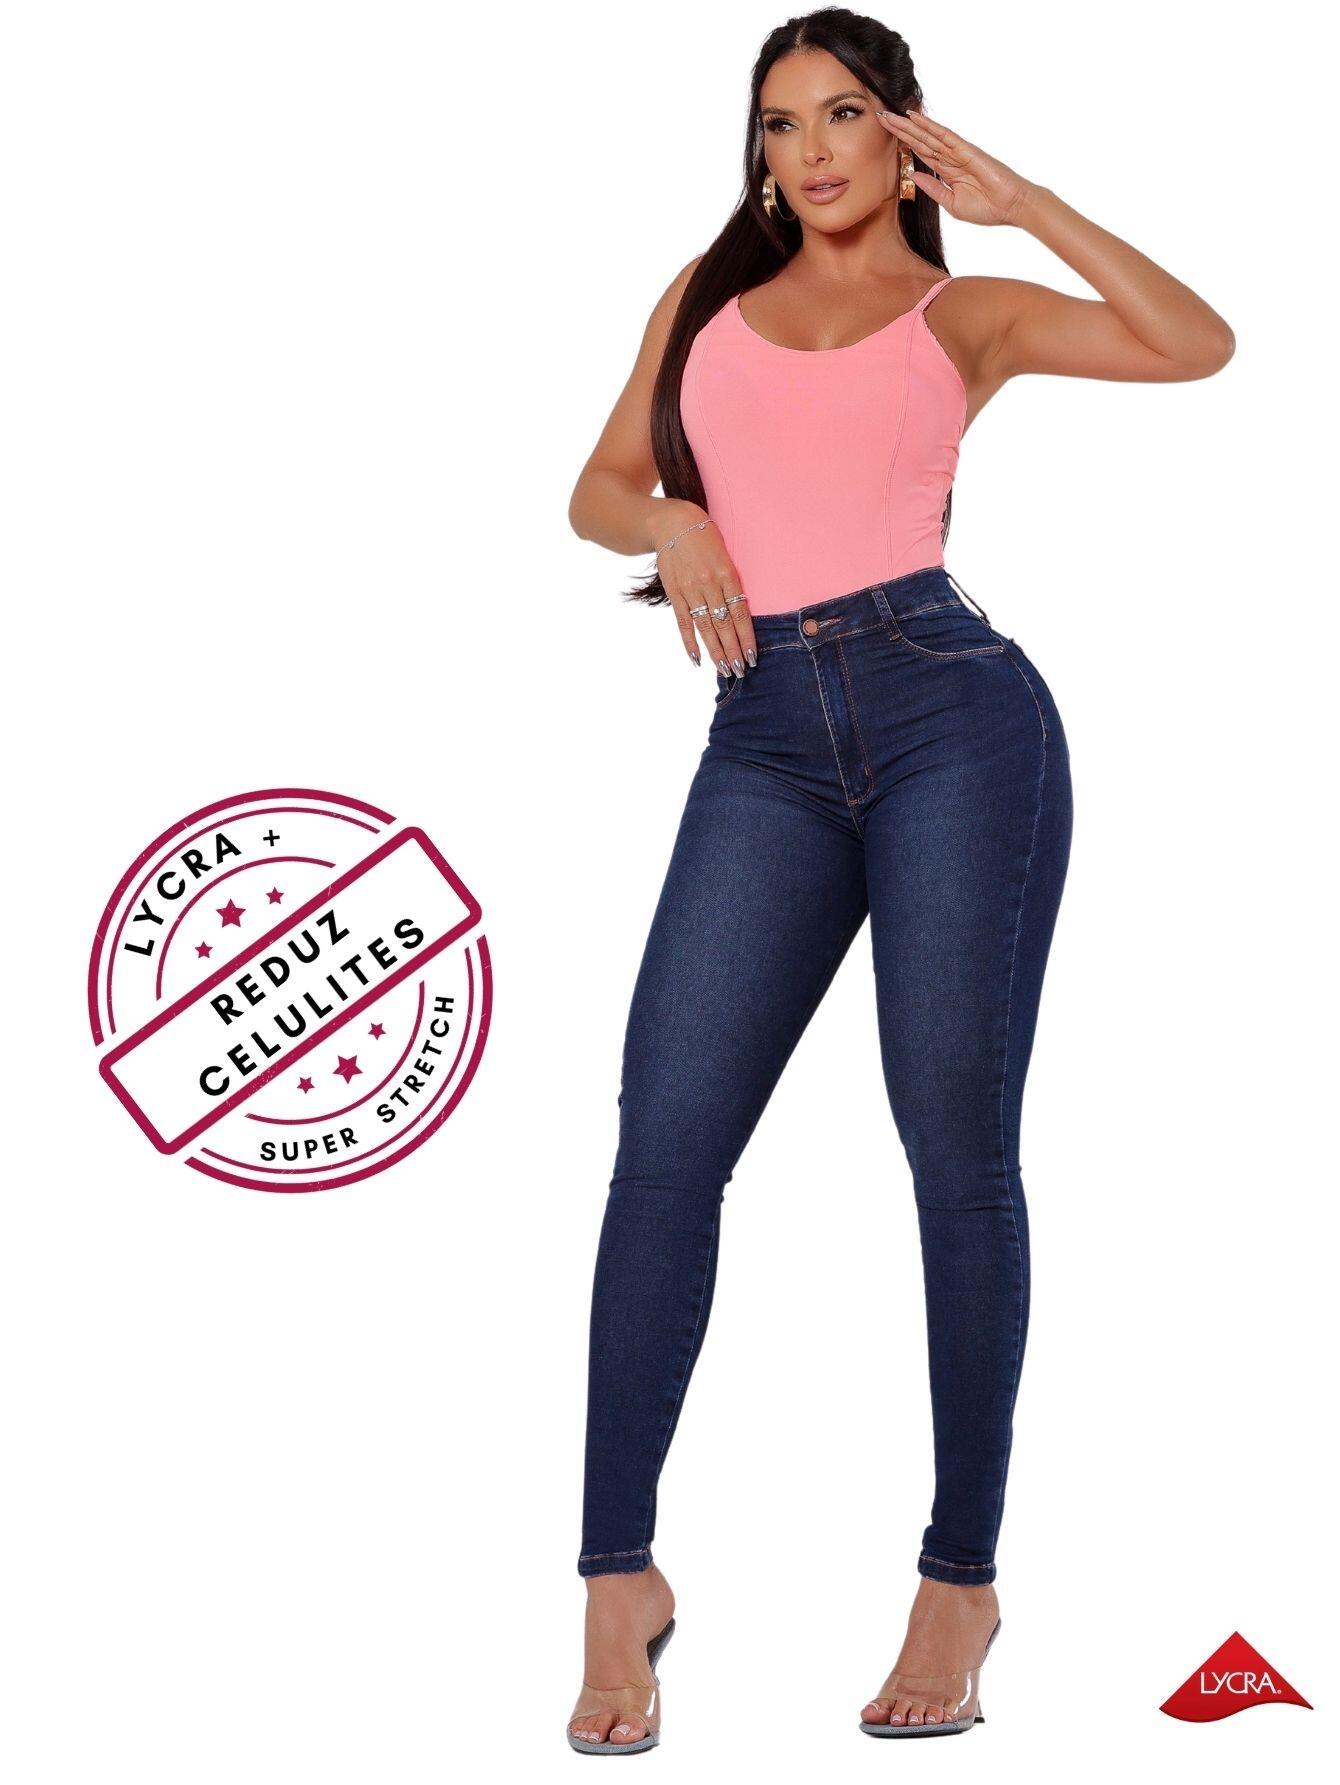 Venda Por Atacado De Calça Jeans Feminina Cintura Alta, Sexy, Slim